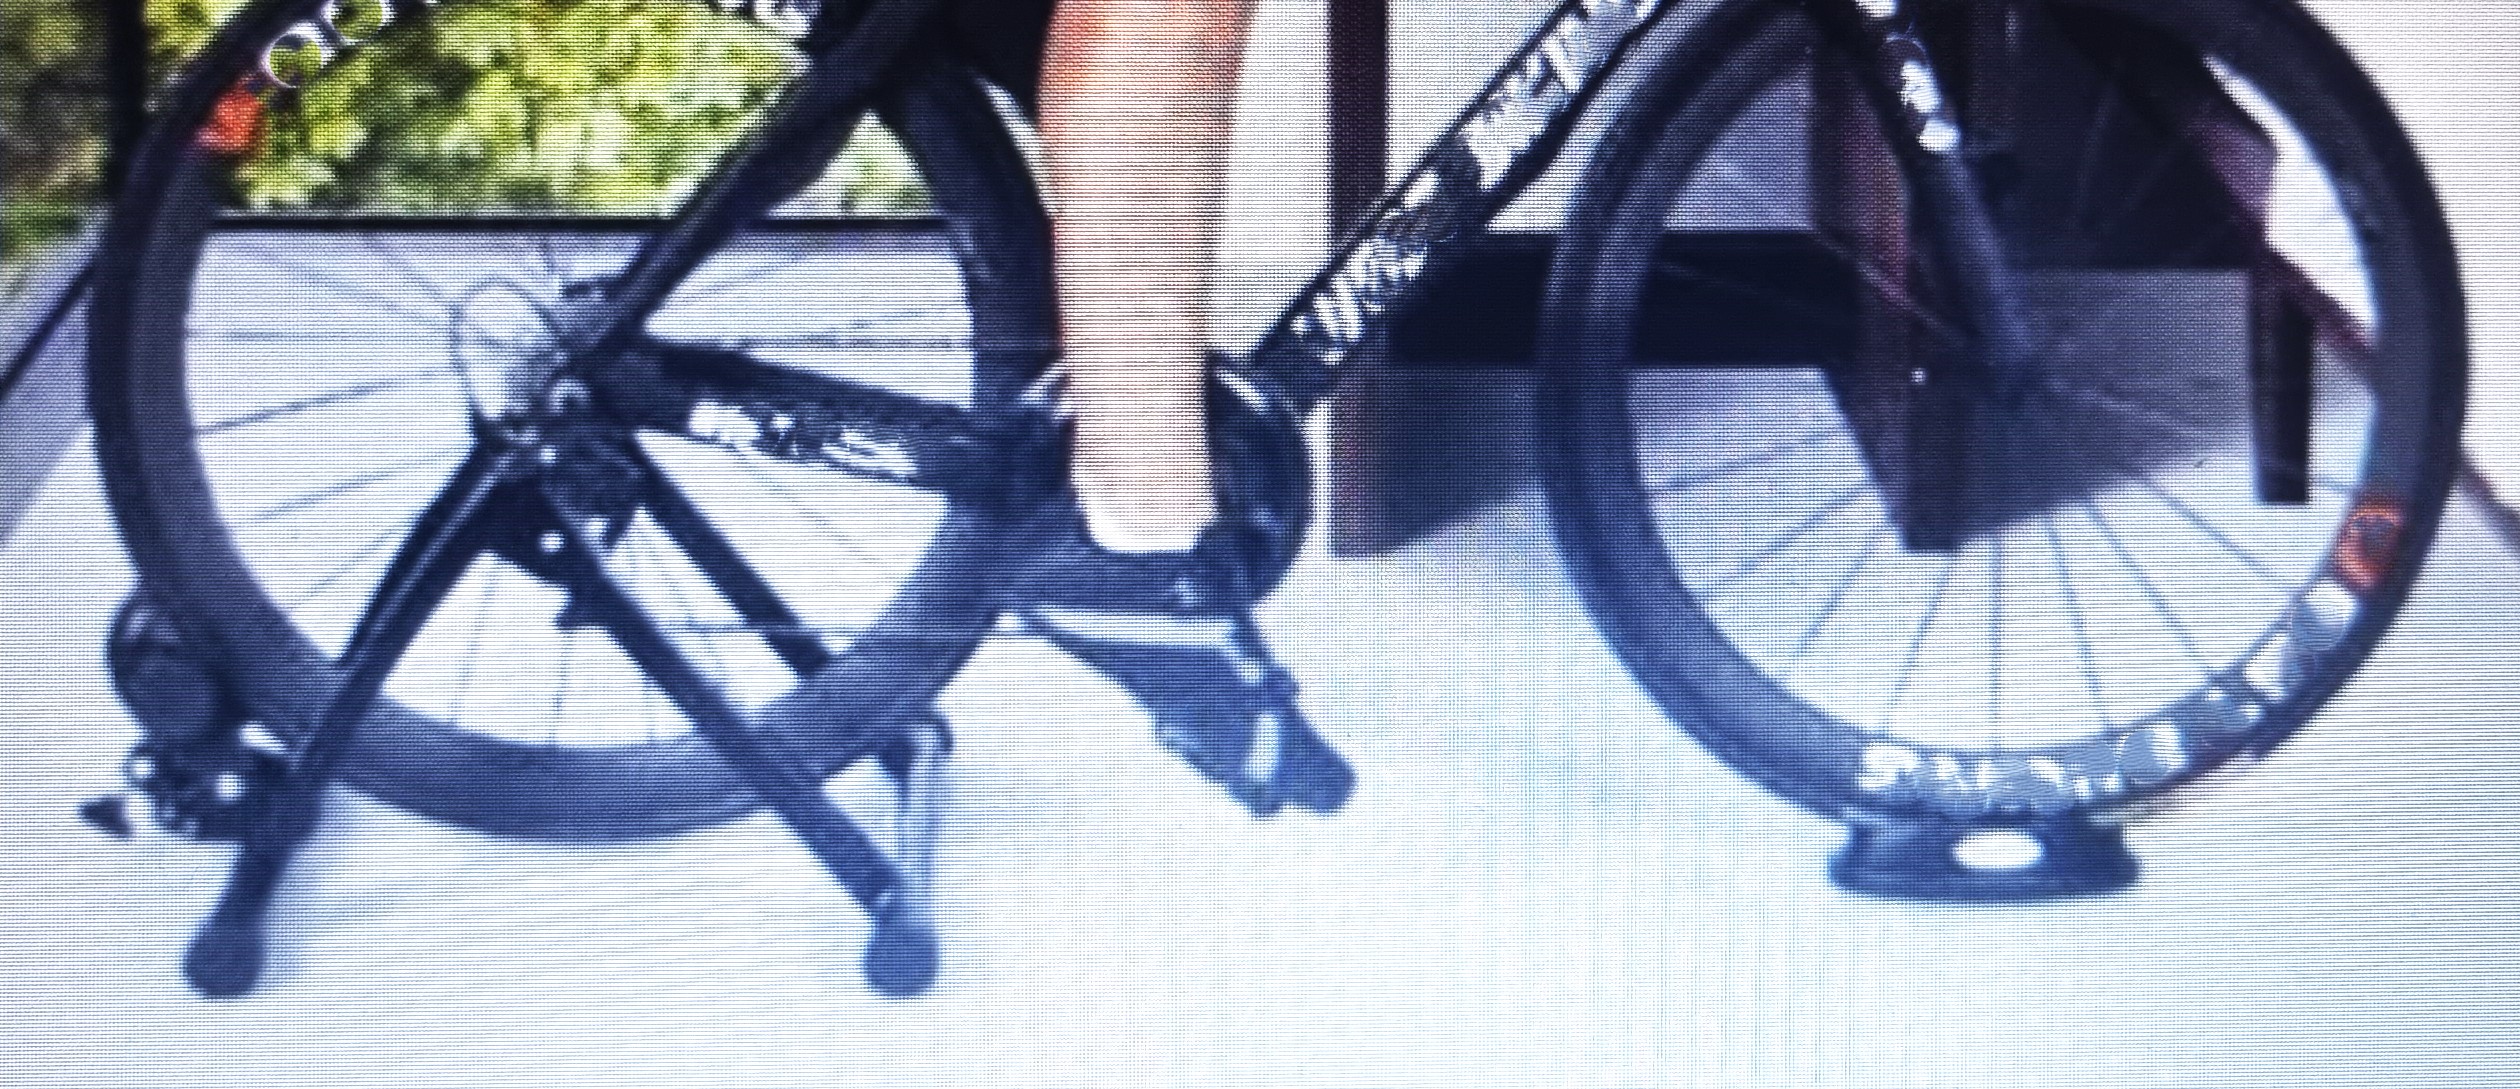 실외 자전거 뒷바퀴에 장착된 삼각롤러&#44; 검은색&#44; 가운데 페달 밟고 달리고 있는 자전거 승차자의 다리&#44;